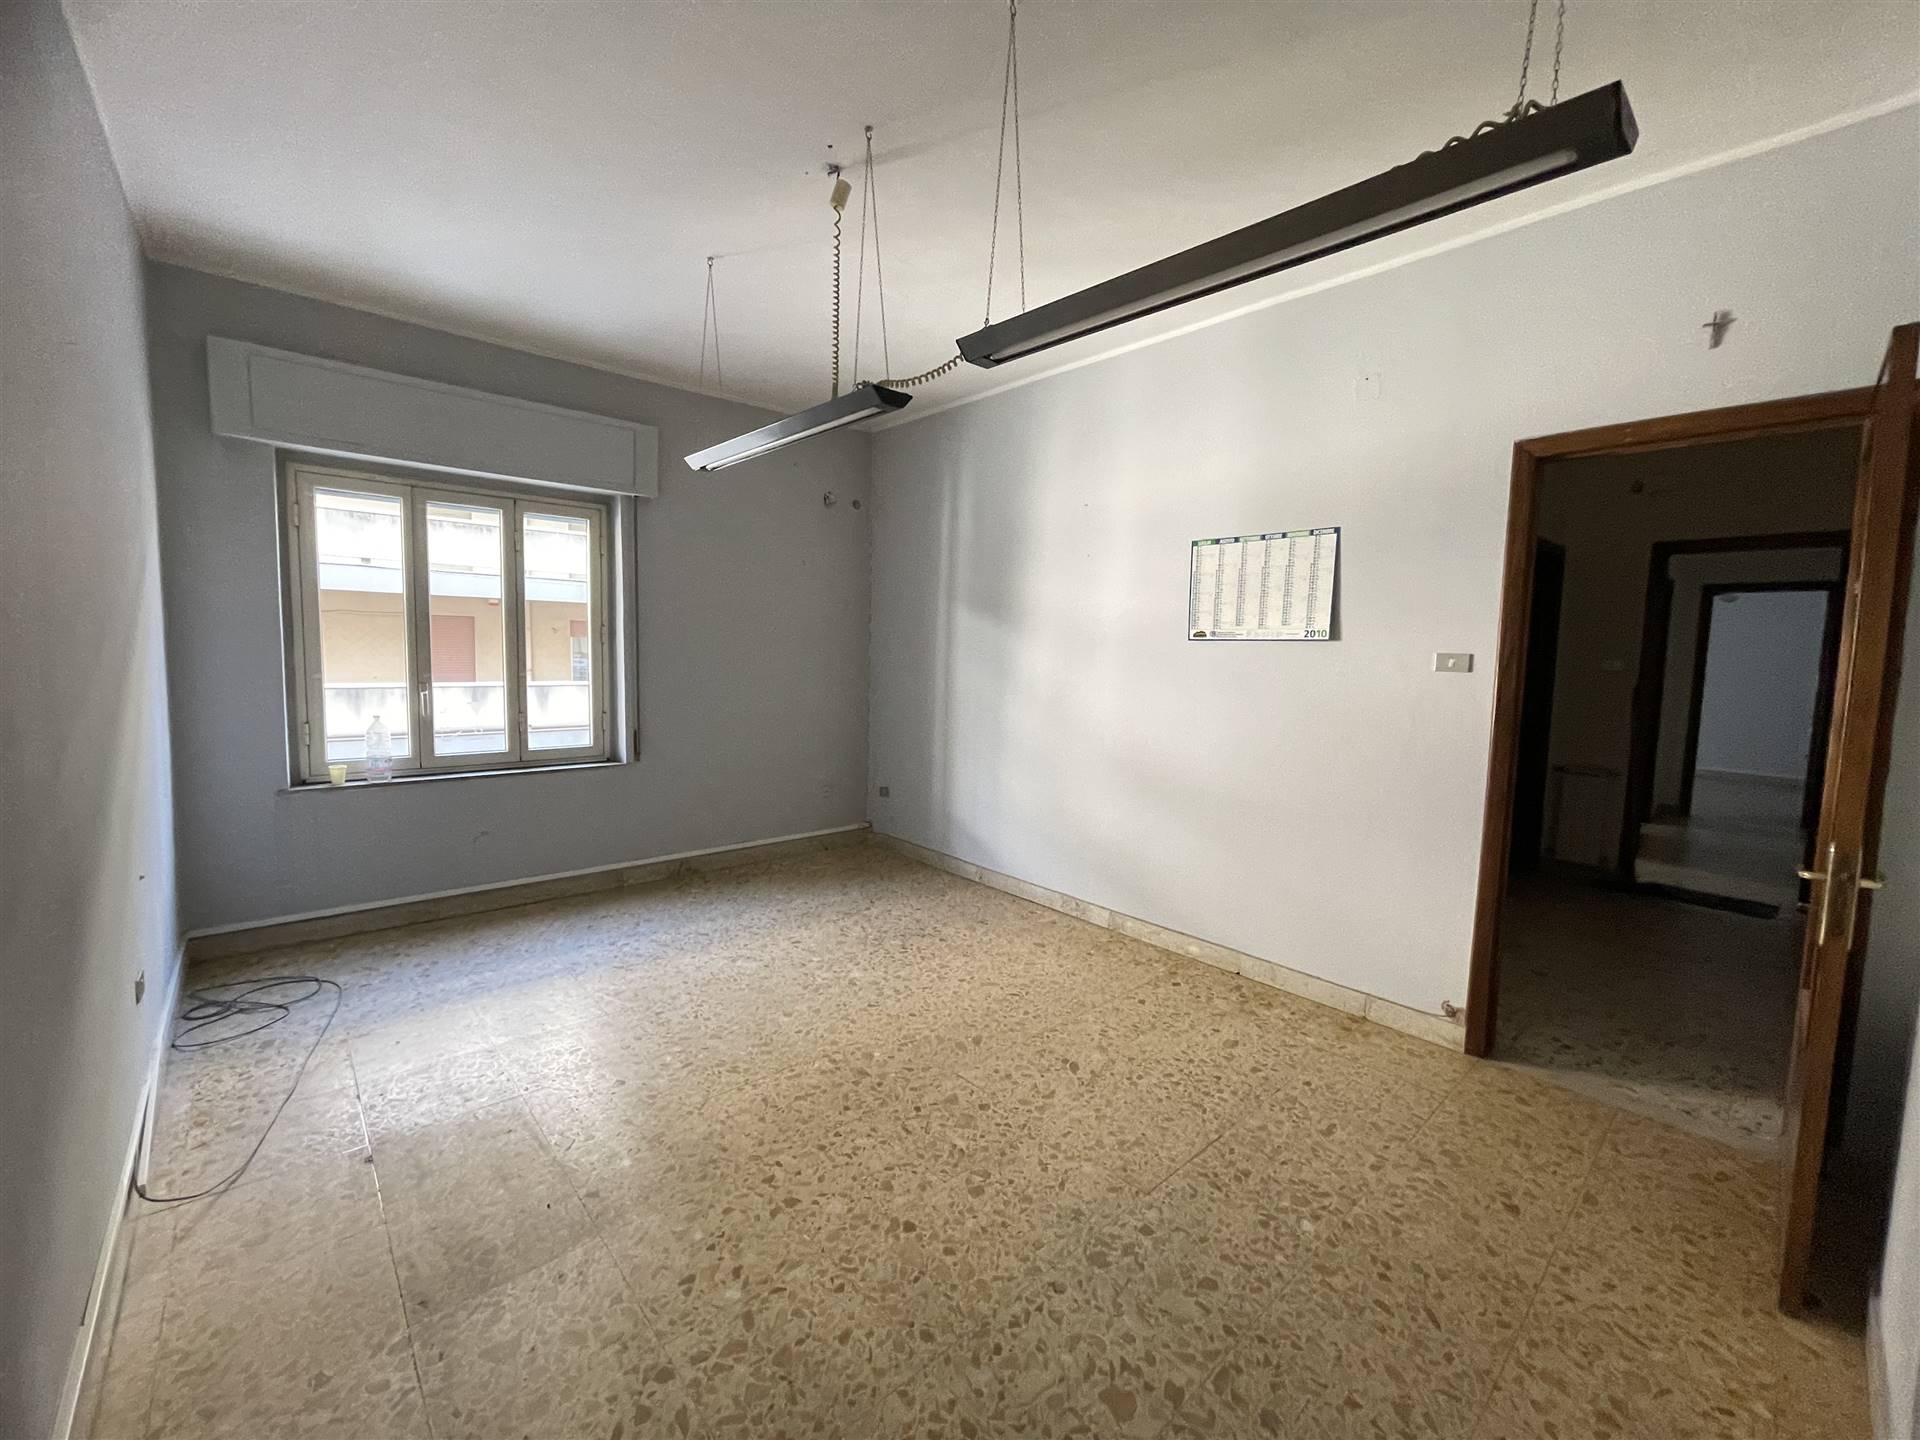 Appartamento in Via Giovanni Battista de Cosmi 9 in zona Regione,sicilia,malta,leone Xiii,via Libertà,tribunale a Caltanissetta